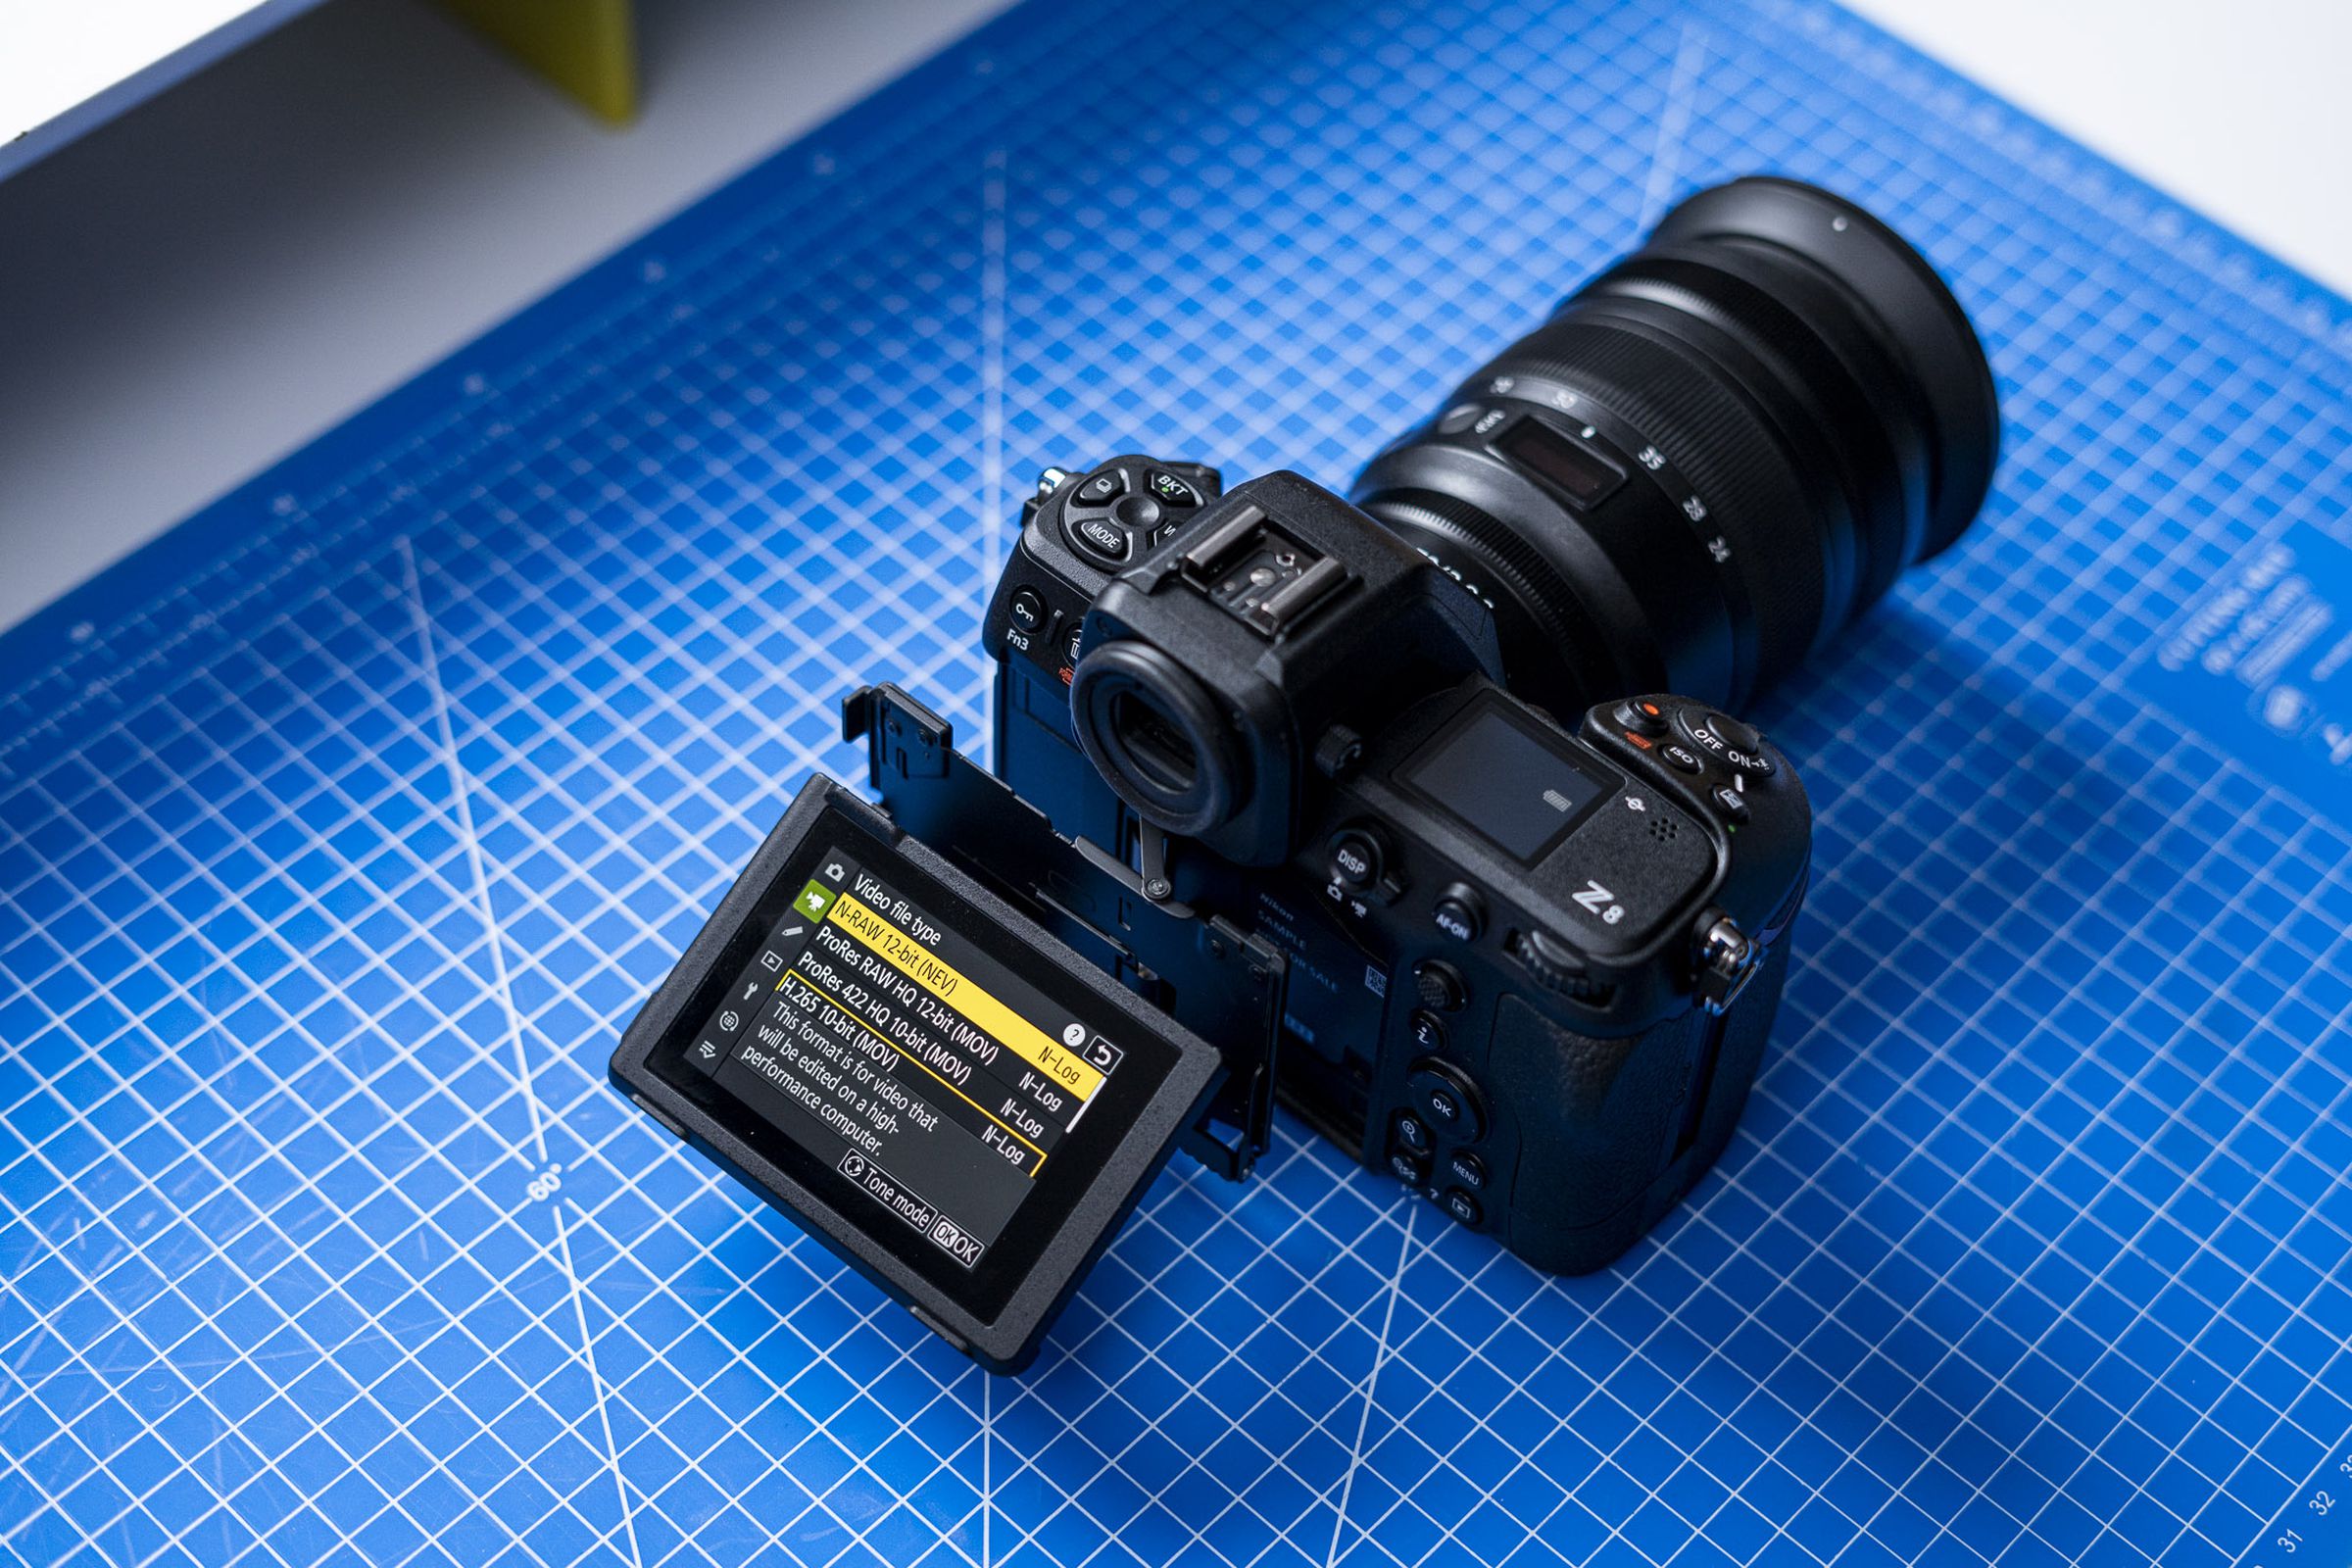 The Z8 can shoot video in 12-bit N-RAW at 8K 60fps or 4K 120fps.